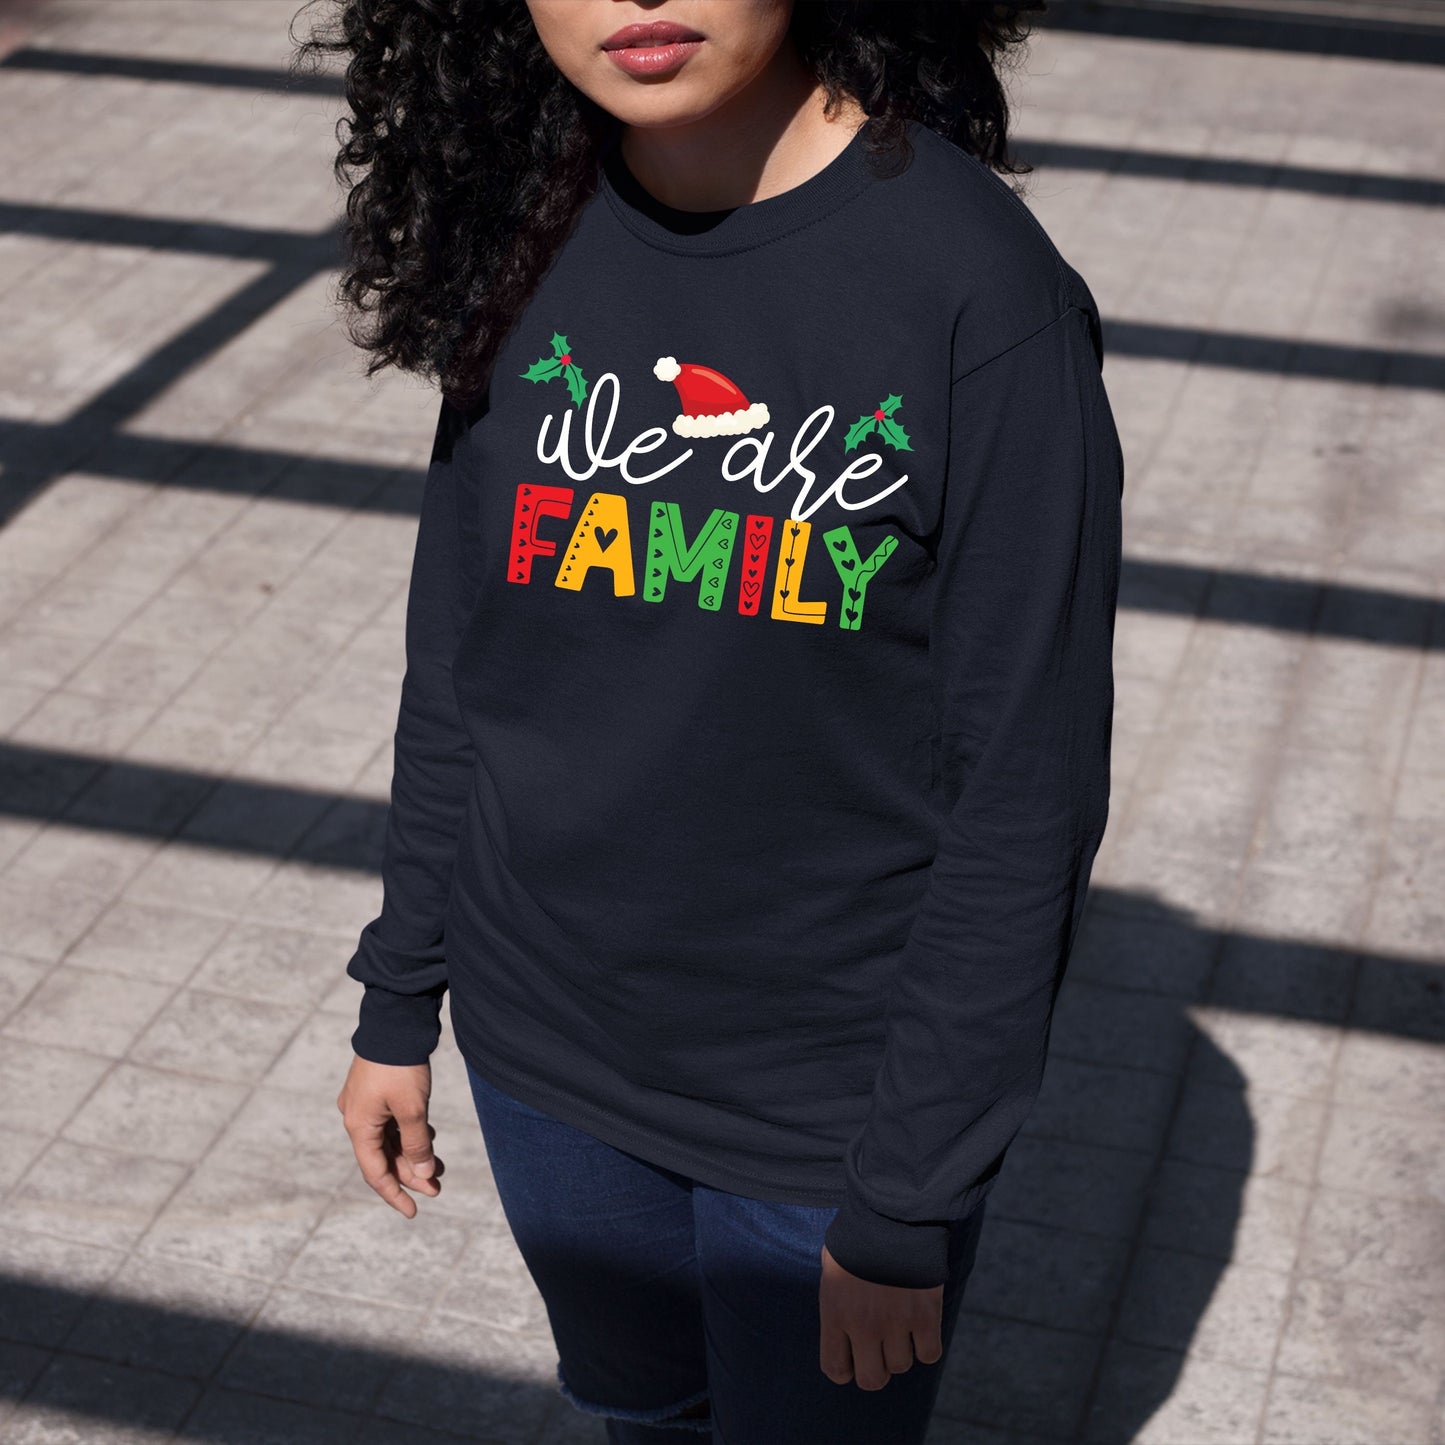 We Are Family, Christmas Long Sleeves, Christmas Sweater, Christmas Crewneck For Youth, Christmas Present, Christmas Sweatshirt